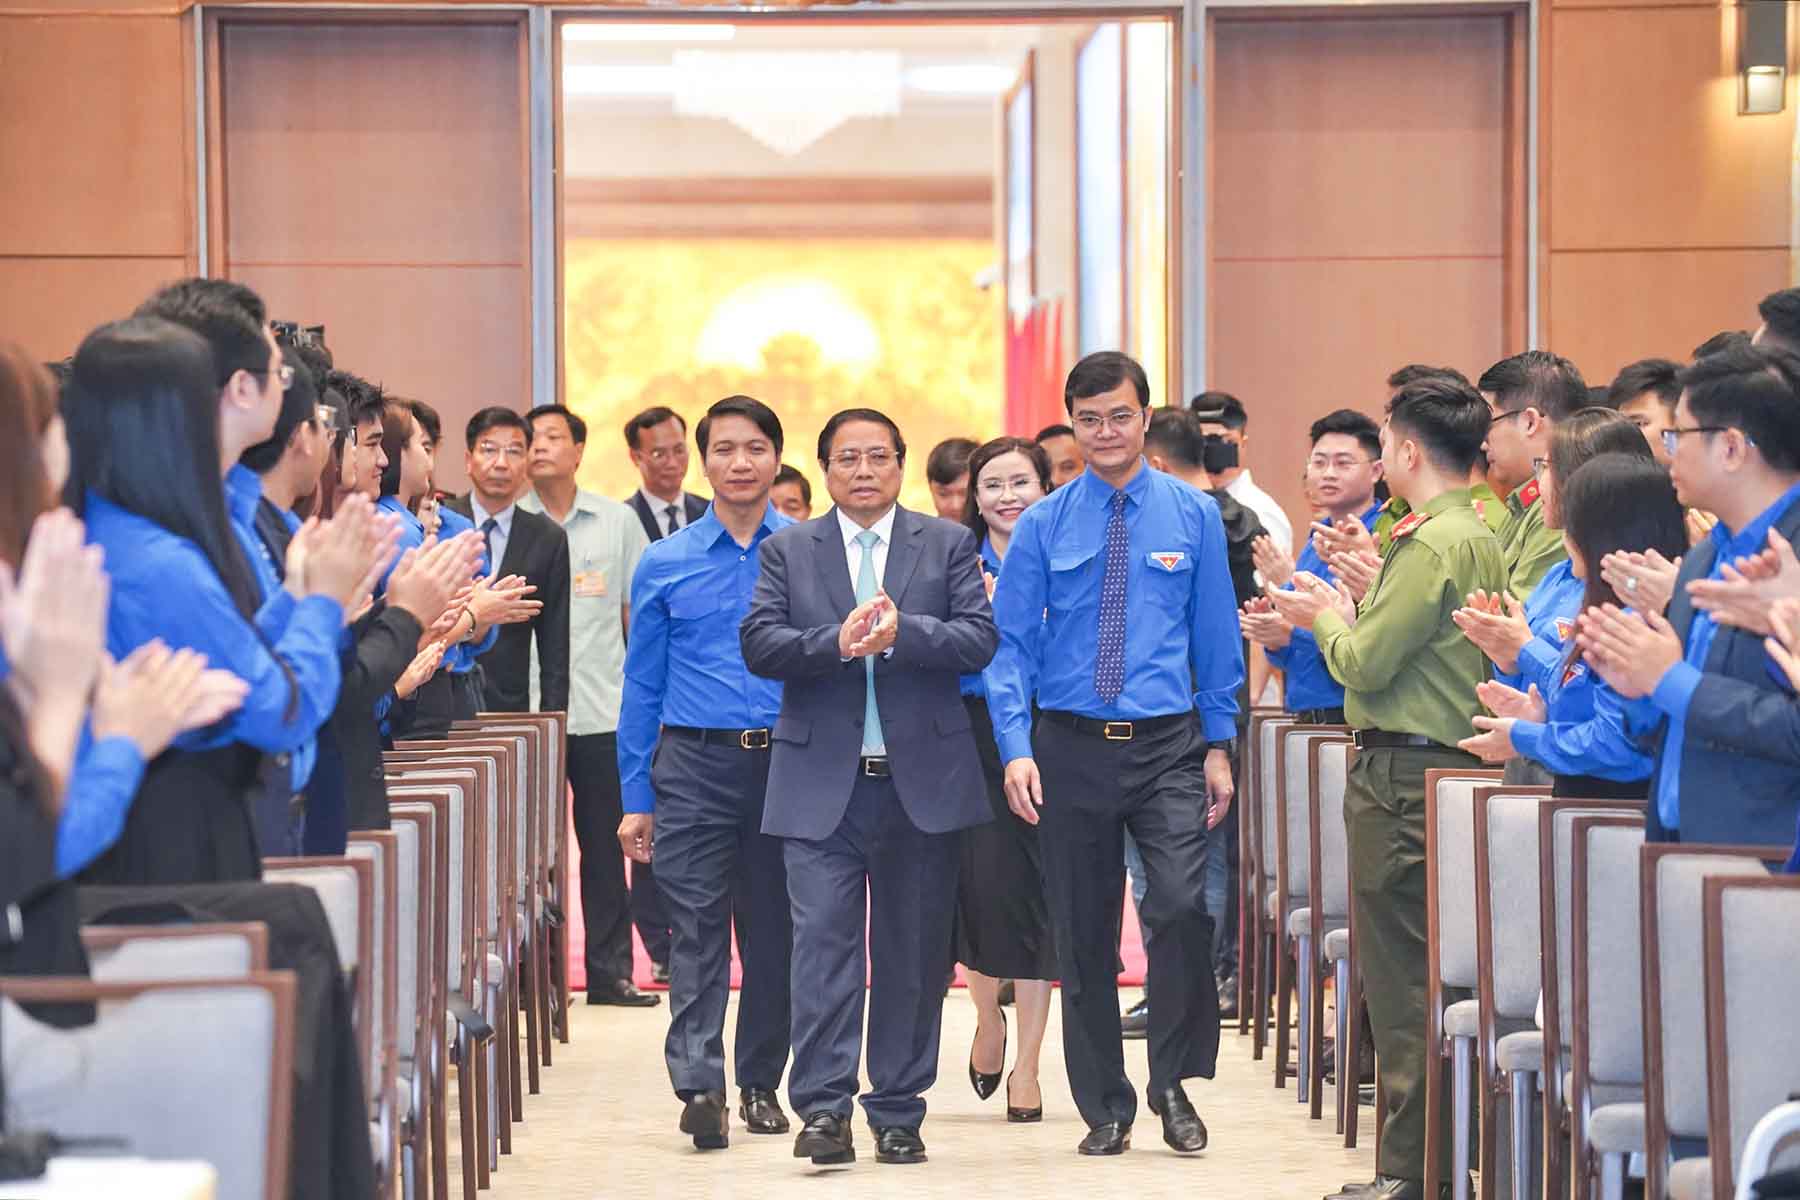 Thủ tướng Chính phủ Phạm Minh Chính đến dự chương trình gặp mặt và đối thoại với thanh niên nhân dịp kỷ niệm 93 năm Ngày thành lập Đoàn Thanh niên Cộng sản Hồ Chí Minh. Ảnh: VGP